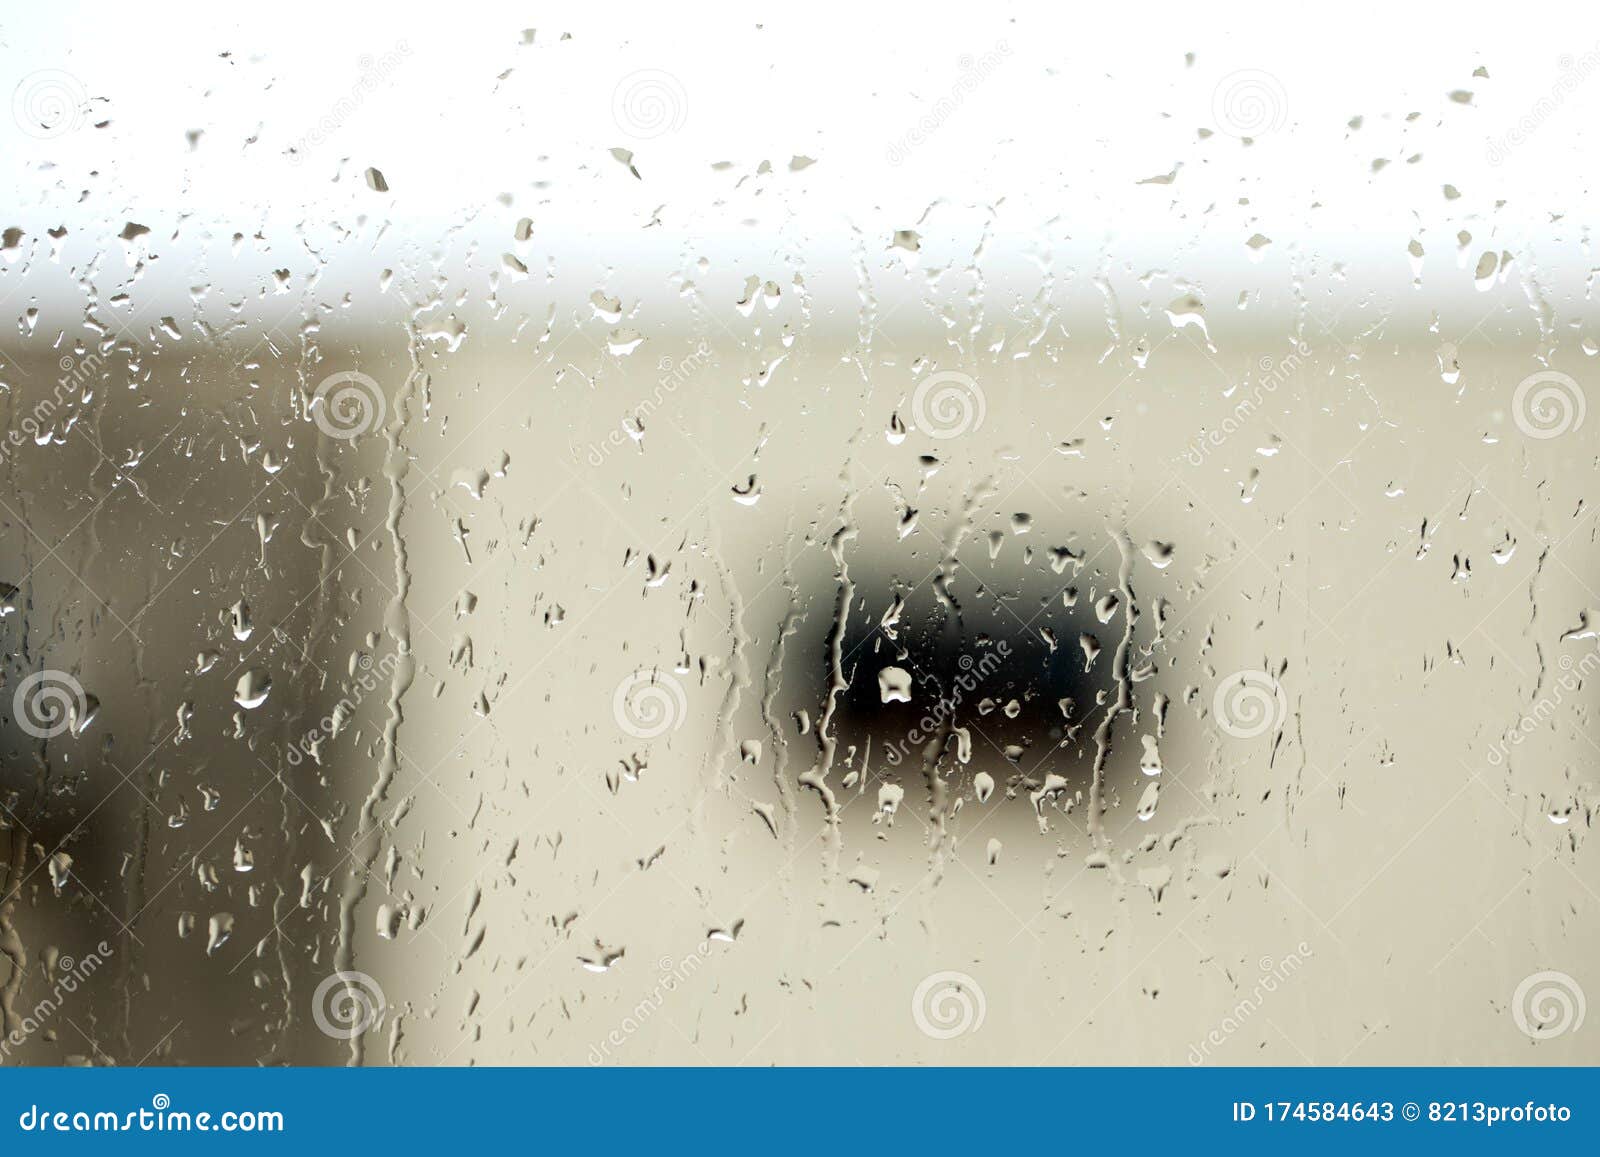 雨背景 窗上雨滴 秋季背景 抽象质感的壁纸库存图片 图片包括有湿气 模式 环境 飞溅 符号